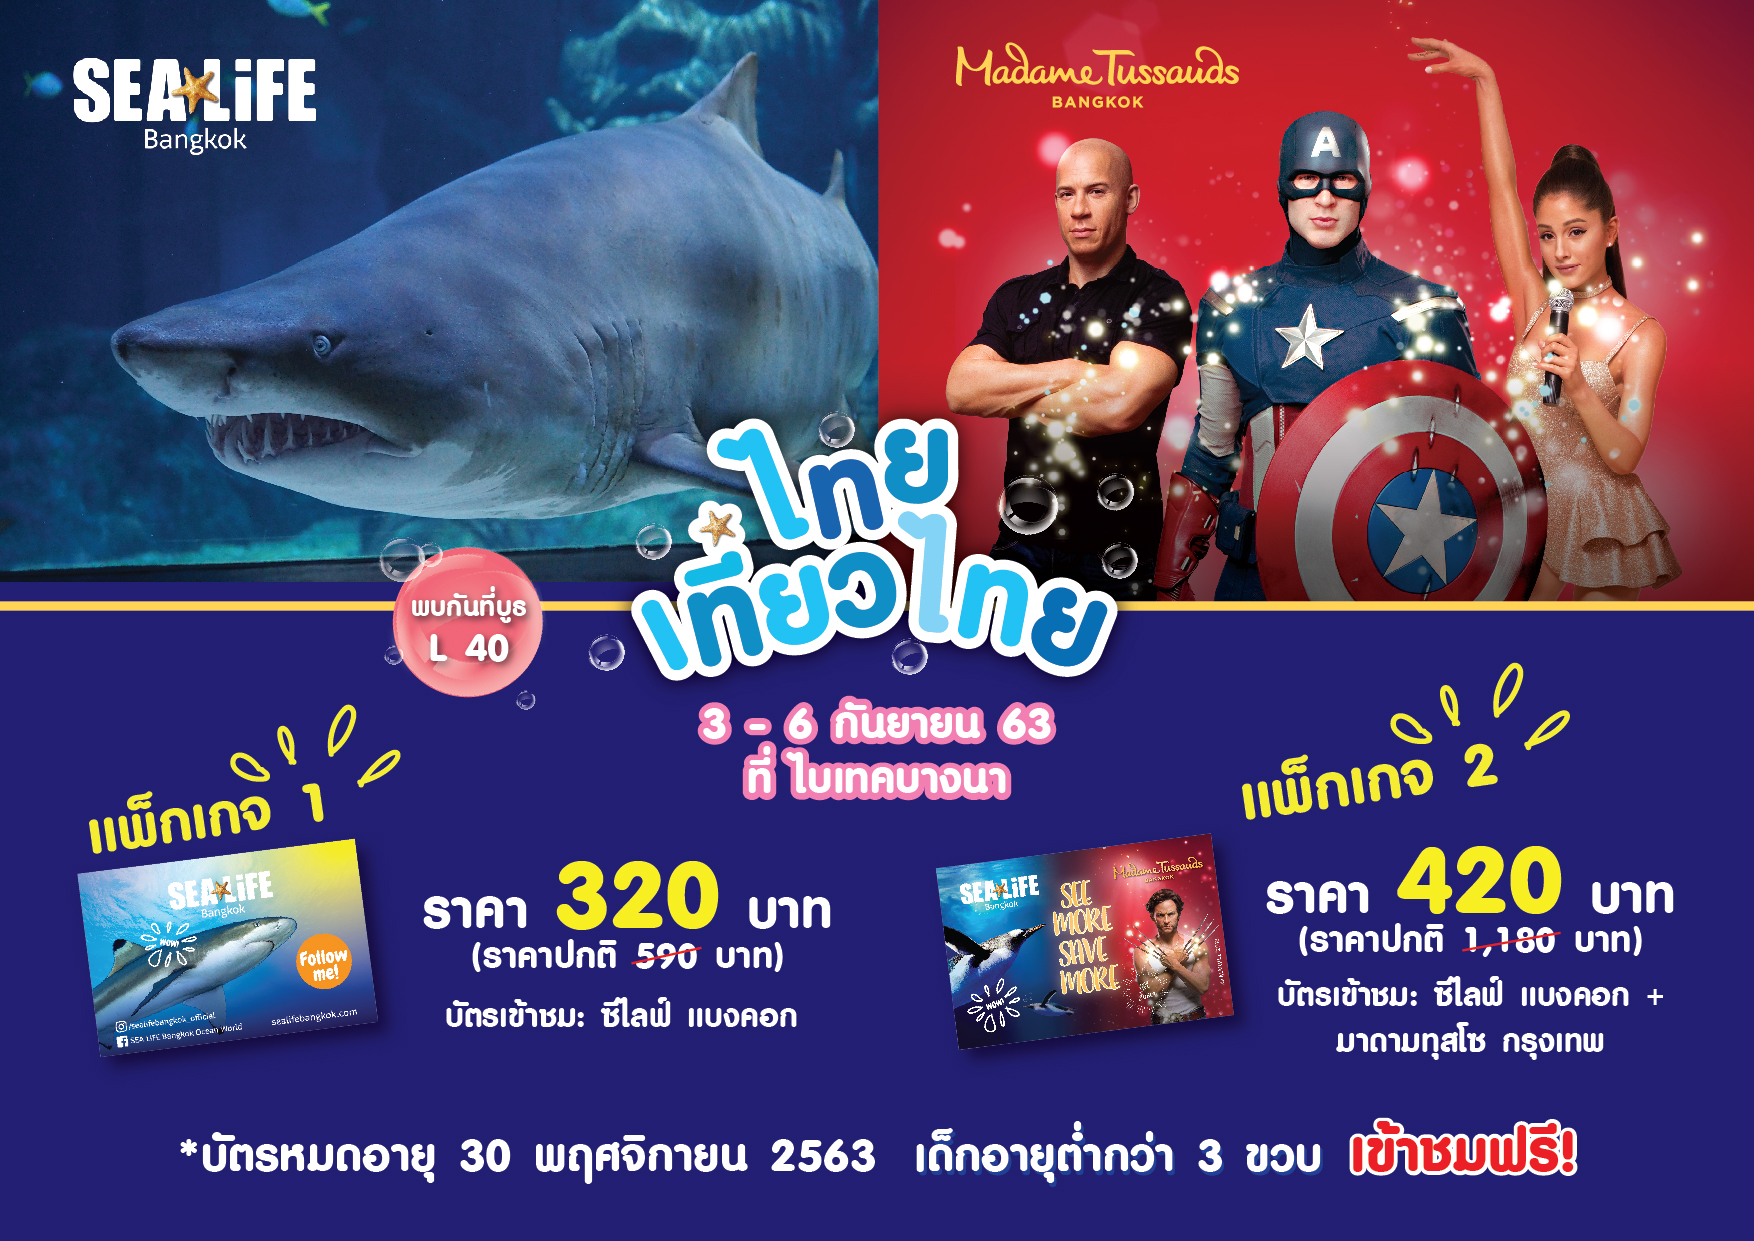 ซีไลฟ์ แบงคอก ชวนไทยเที่ยวไทย เสิร์ฟโปรสุดปังลดกระหน่ำมากกว่า 50% เที่ยวยาวได้ถึง 30 พฤศจิกายน 2563 ในงาน 'ไทยเที่ยวไทย ครั้งที่ 56